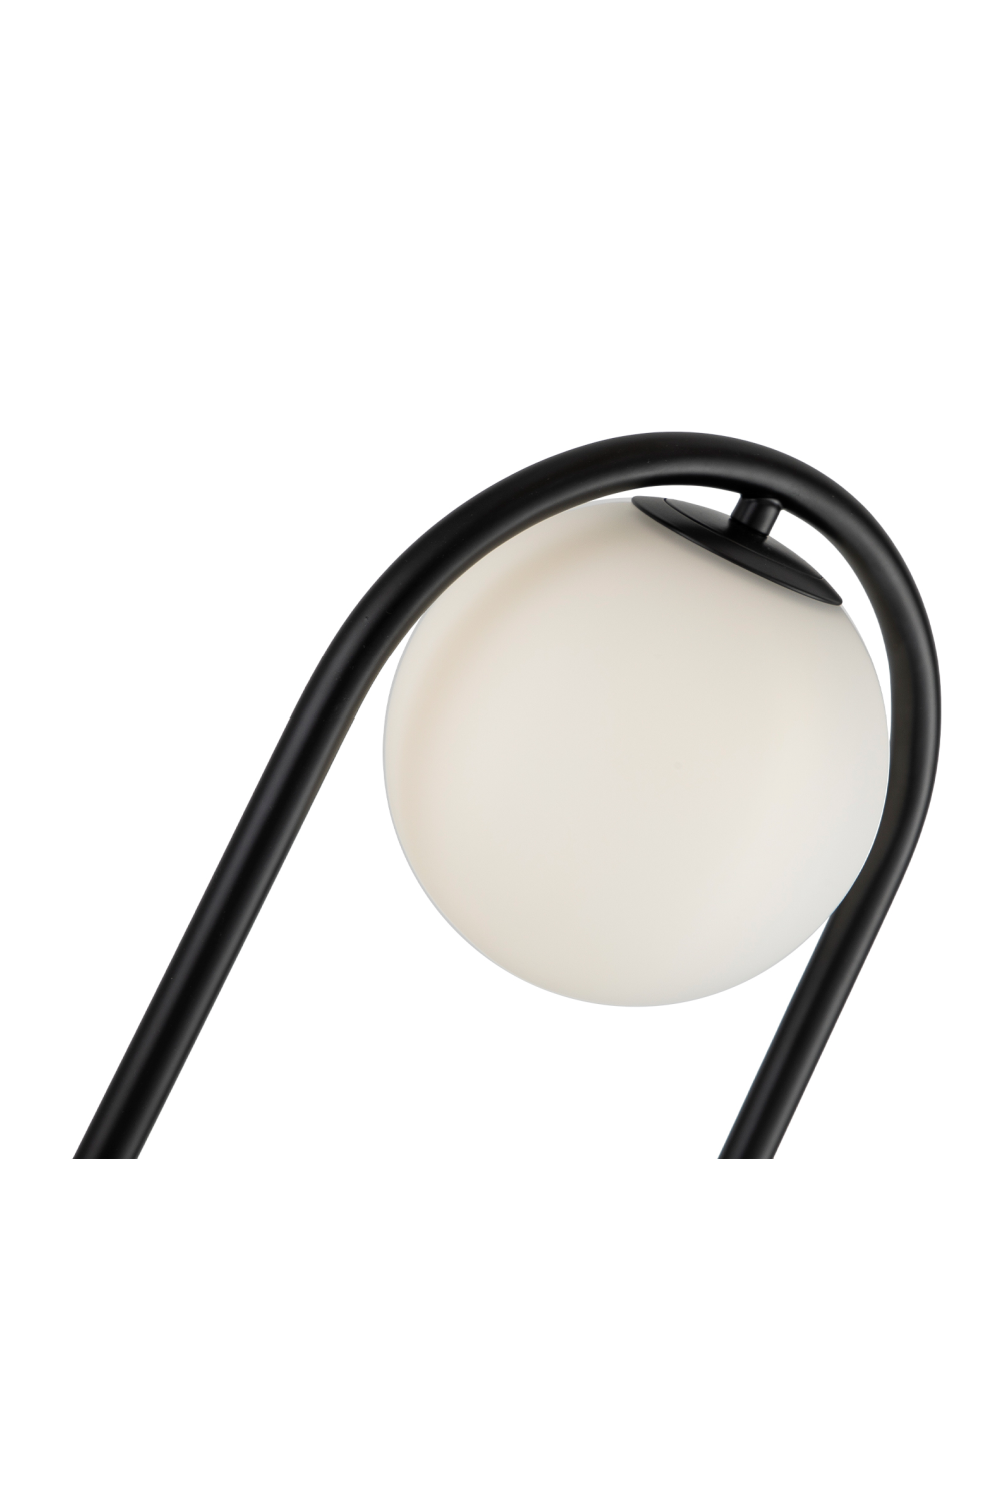 White Glass Spheres Floor Lamp | Liang & Eimil Luca | Oroa.com